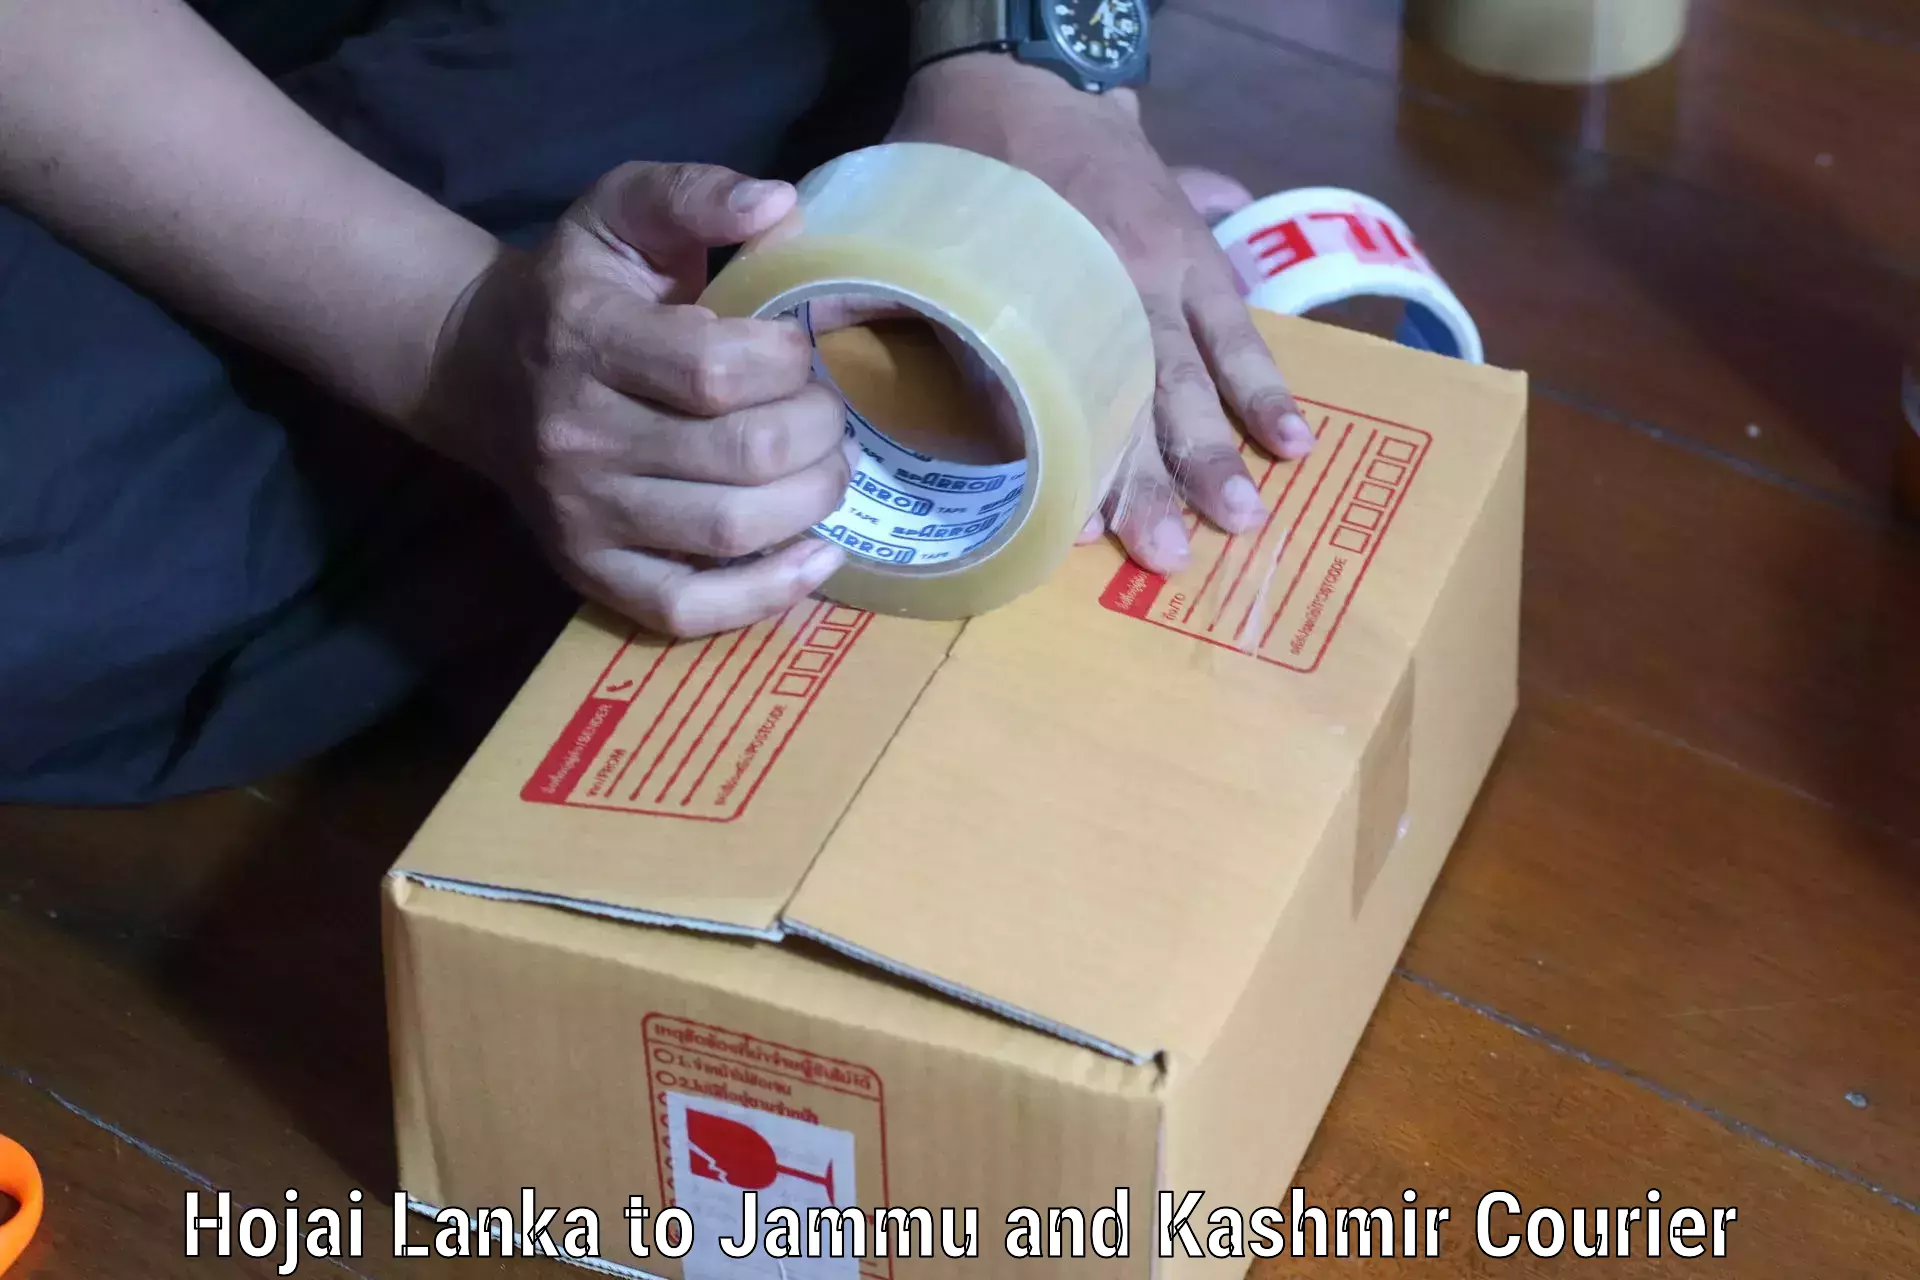 Package tracking in Hojai Lanka to Ramban